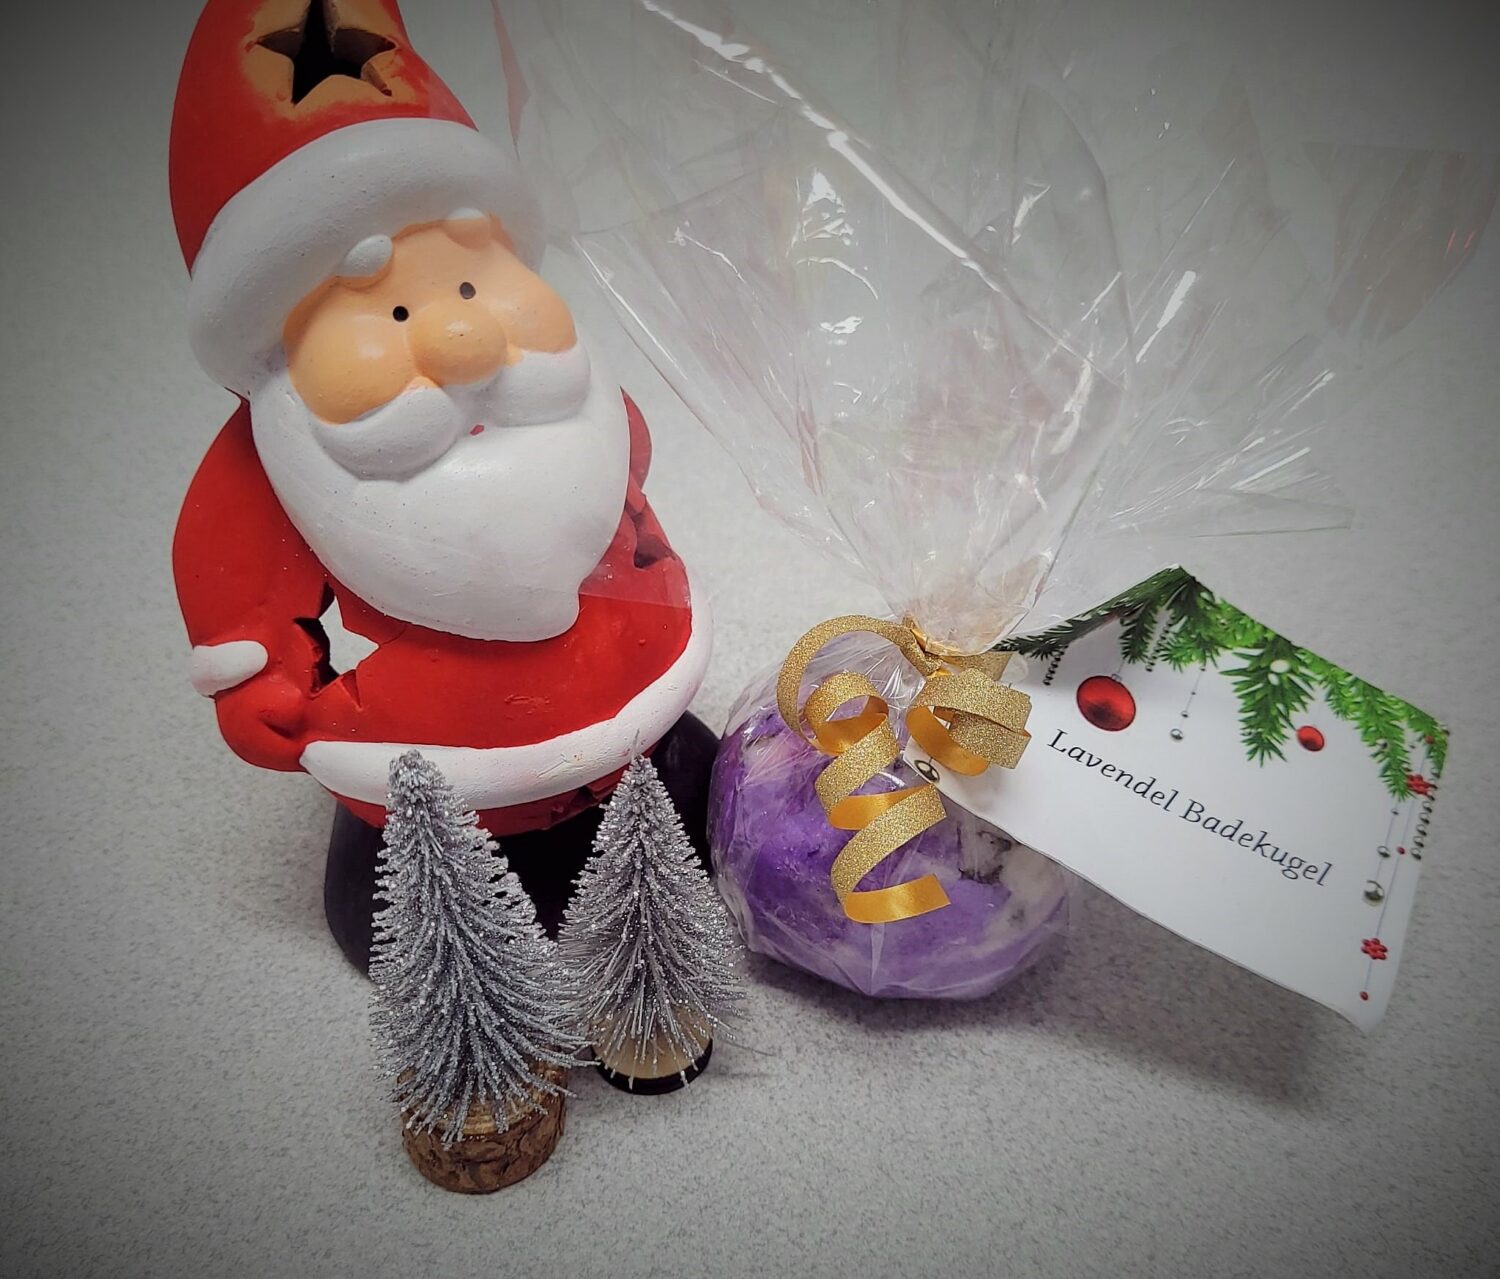 Eine Selbstgemachte Lavendel Bade Kugel liegt schön Verpackt neben einem Kleinem Weihnachtsmann